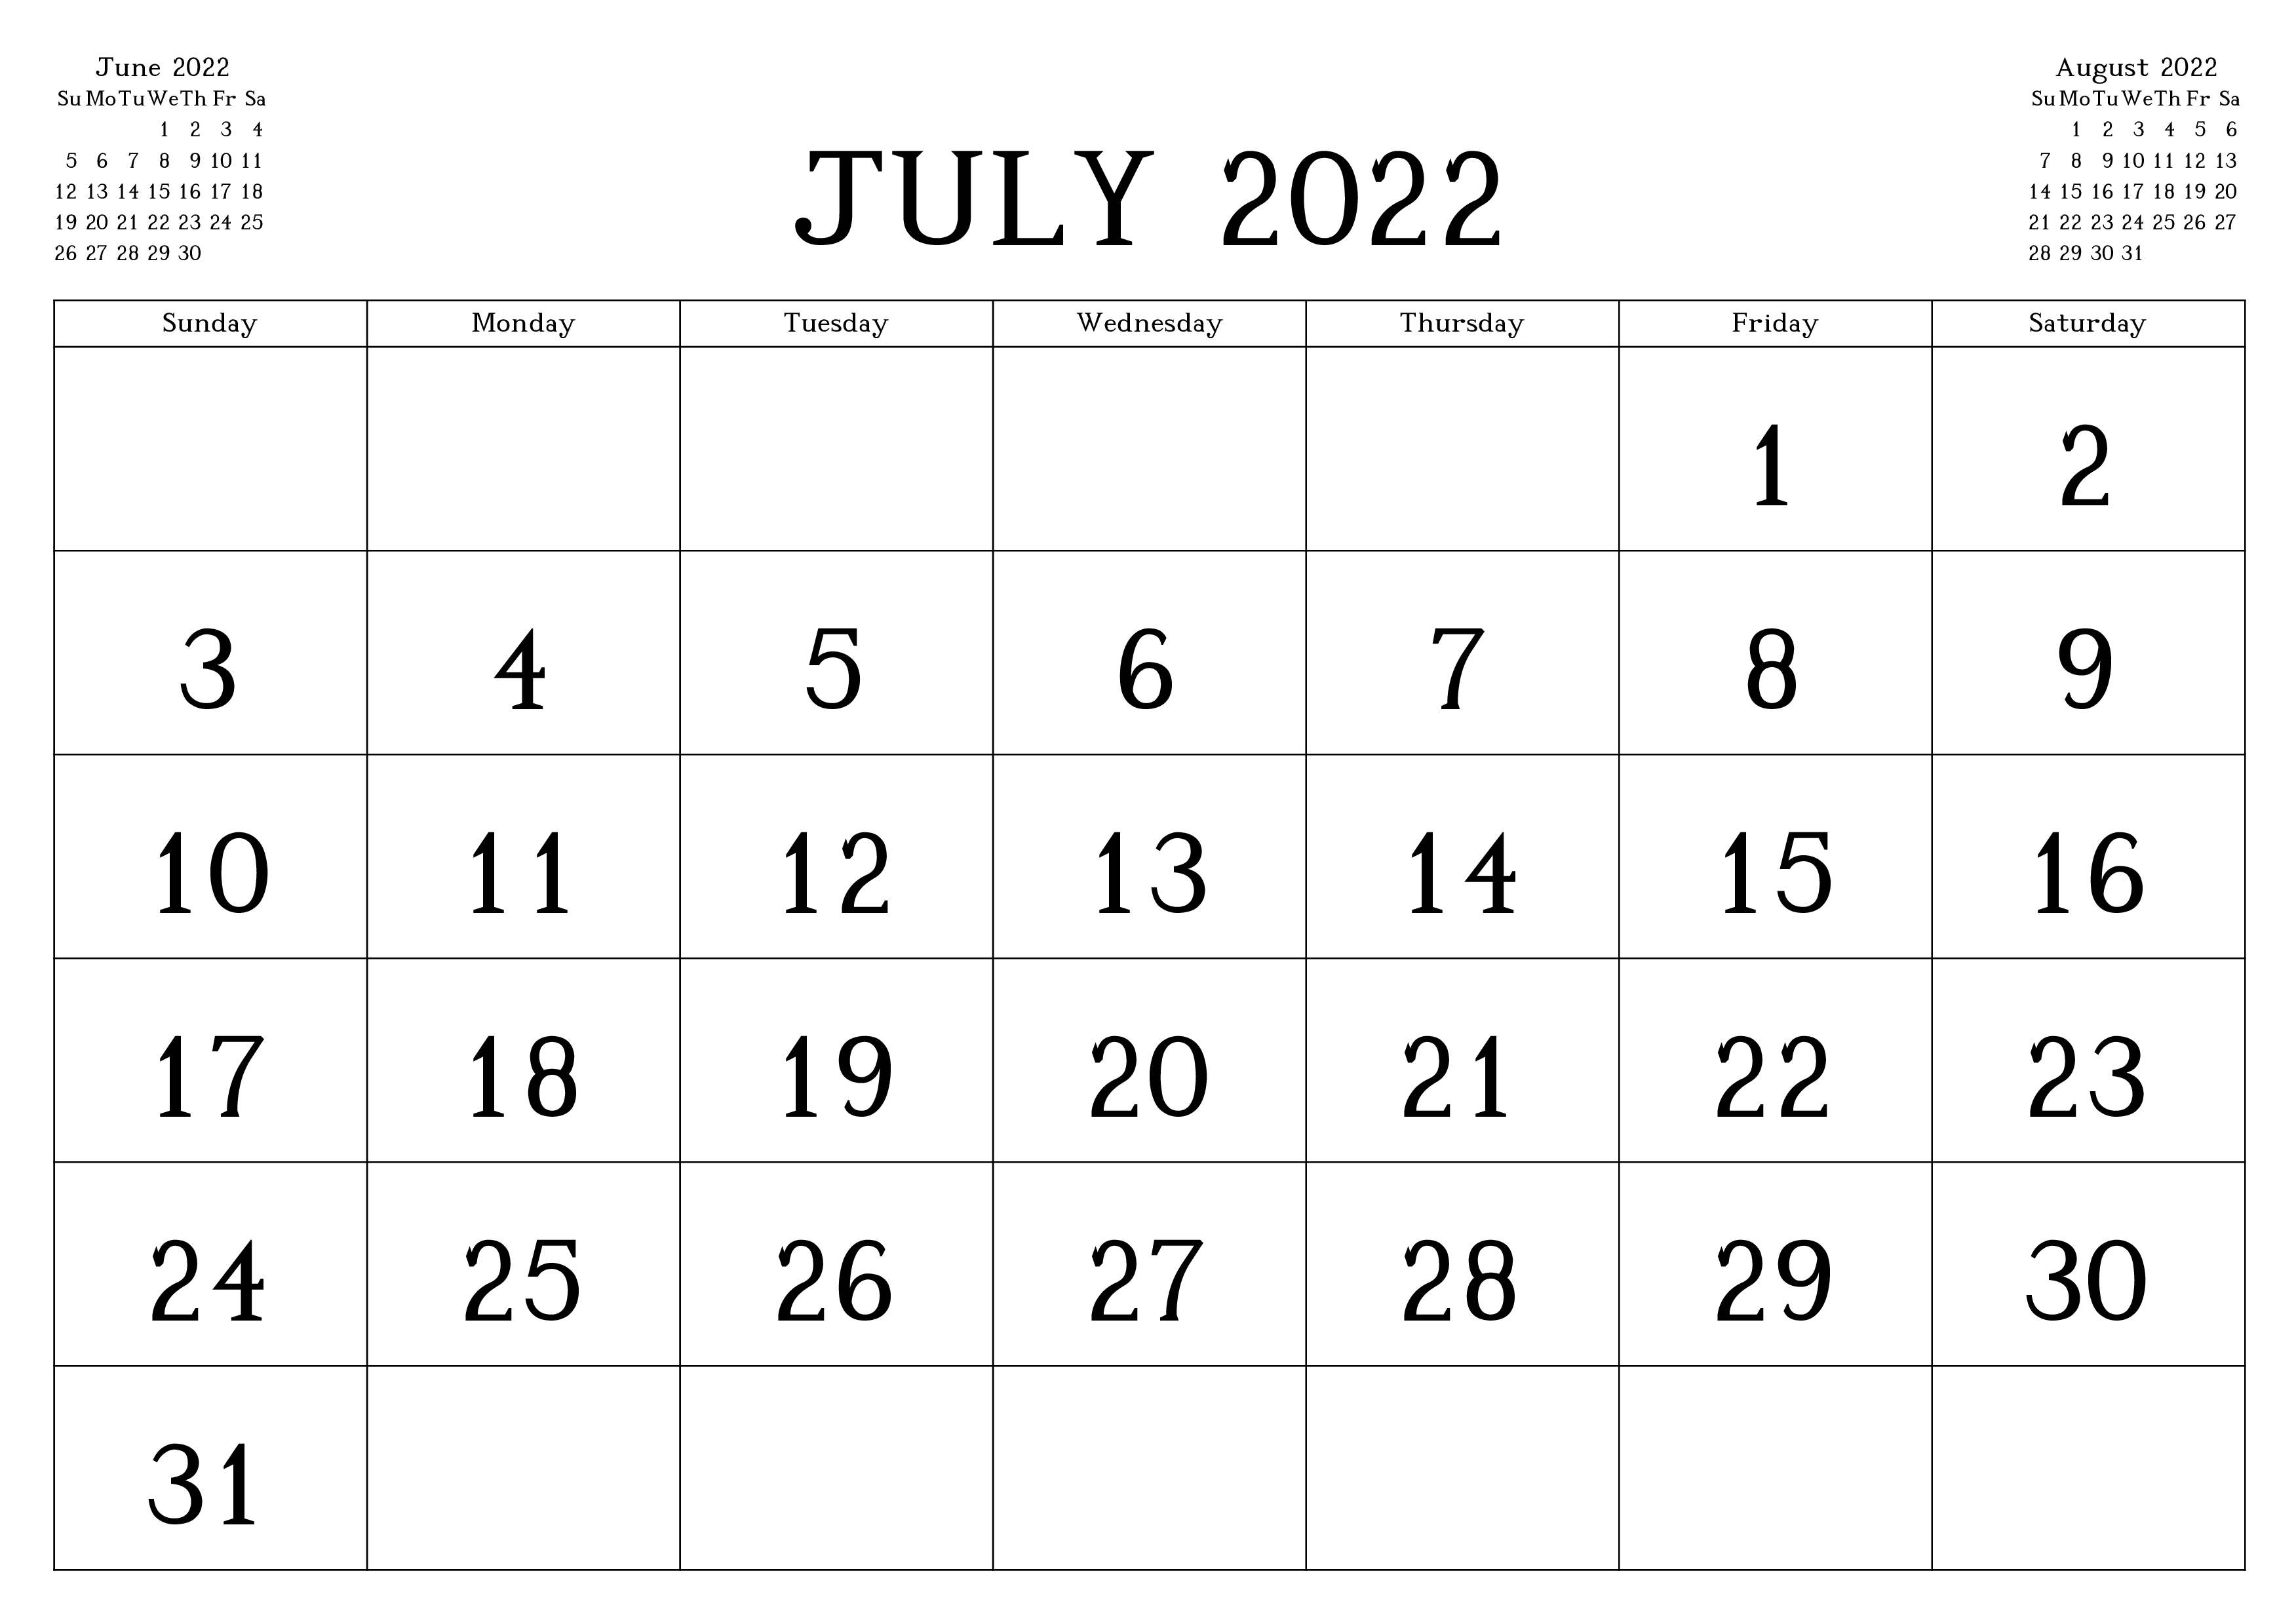 July Calendar 2022 Template